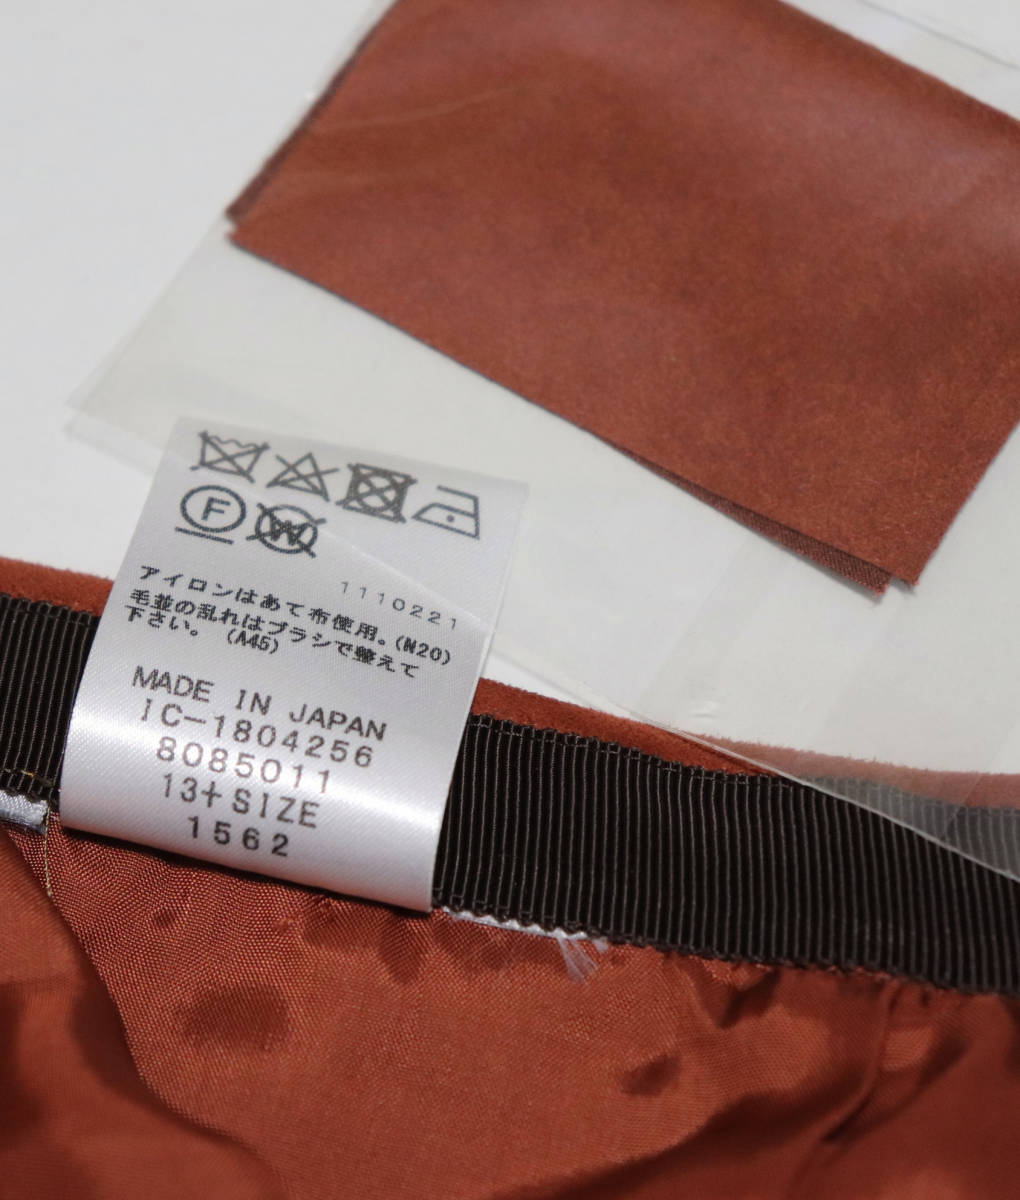 新品【Leilian レリアン】スエード調フレアスカート 13+ 大きいサイズ v4316_画像9